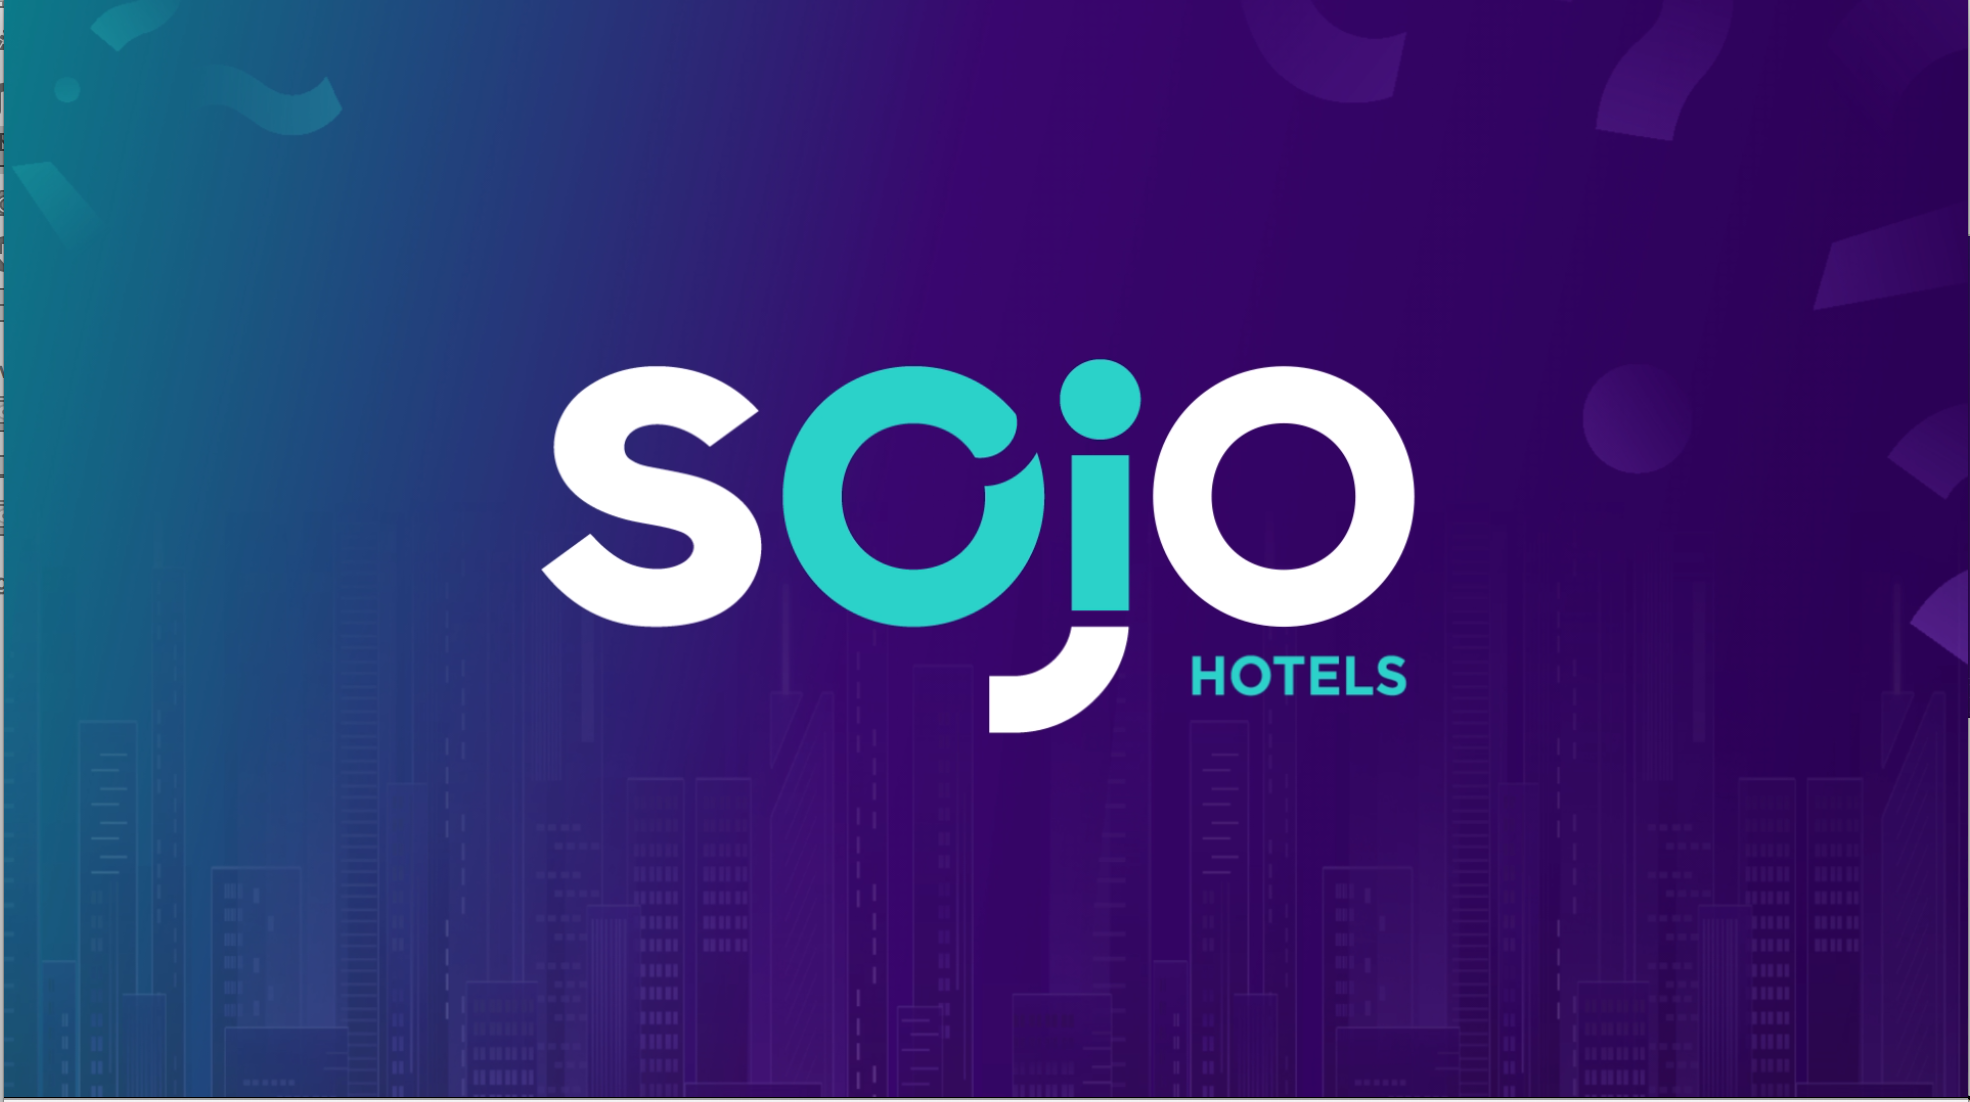 Sojo Hotels, Sojo Kiosk